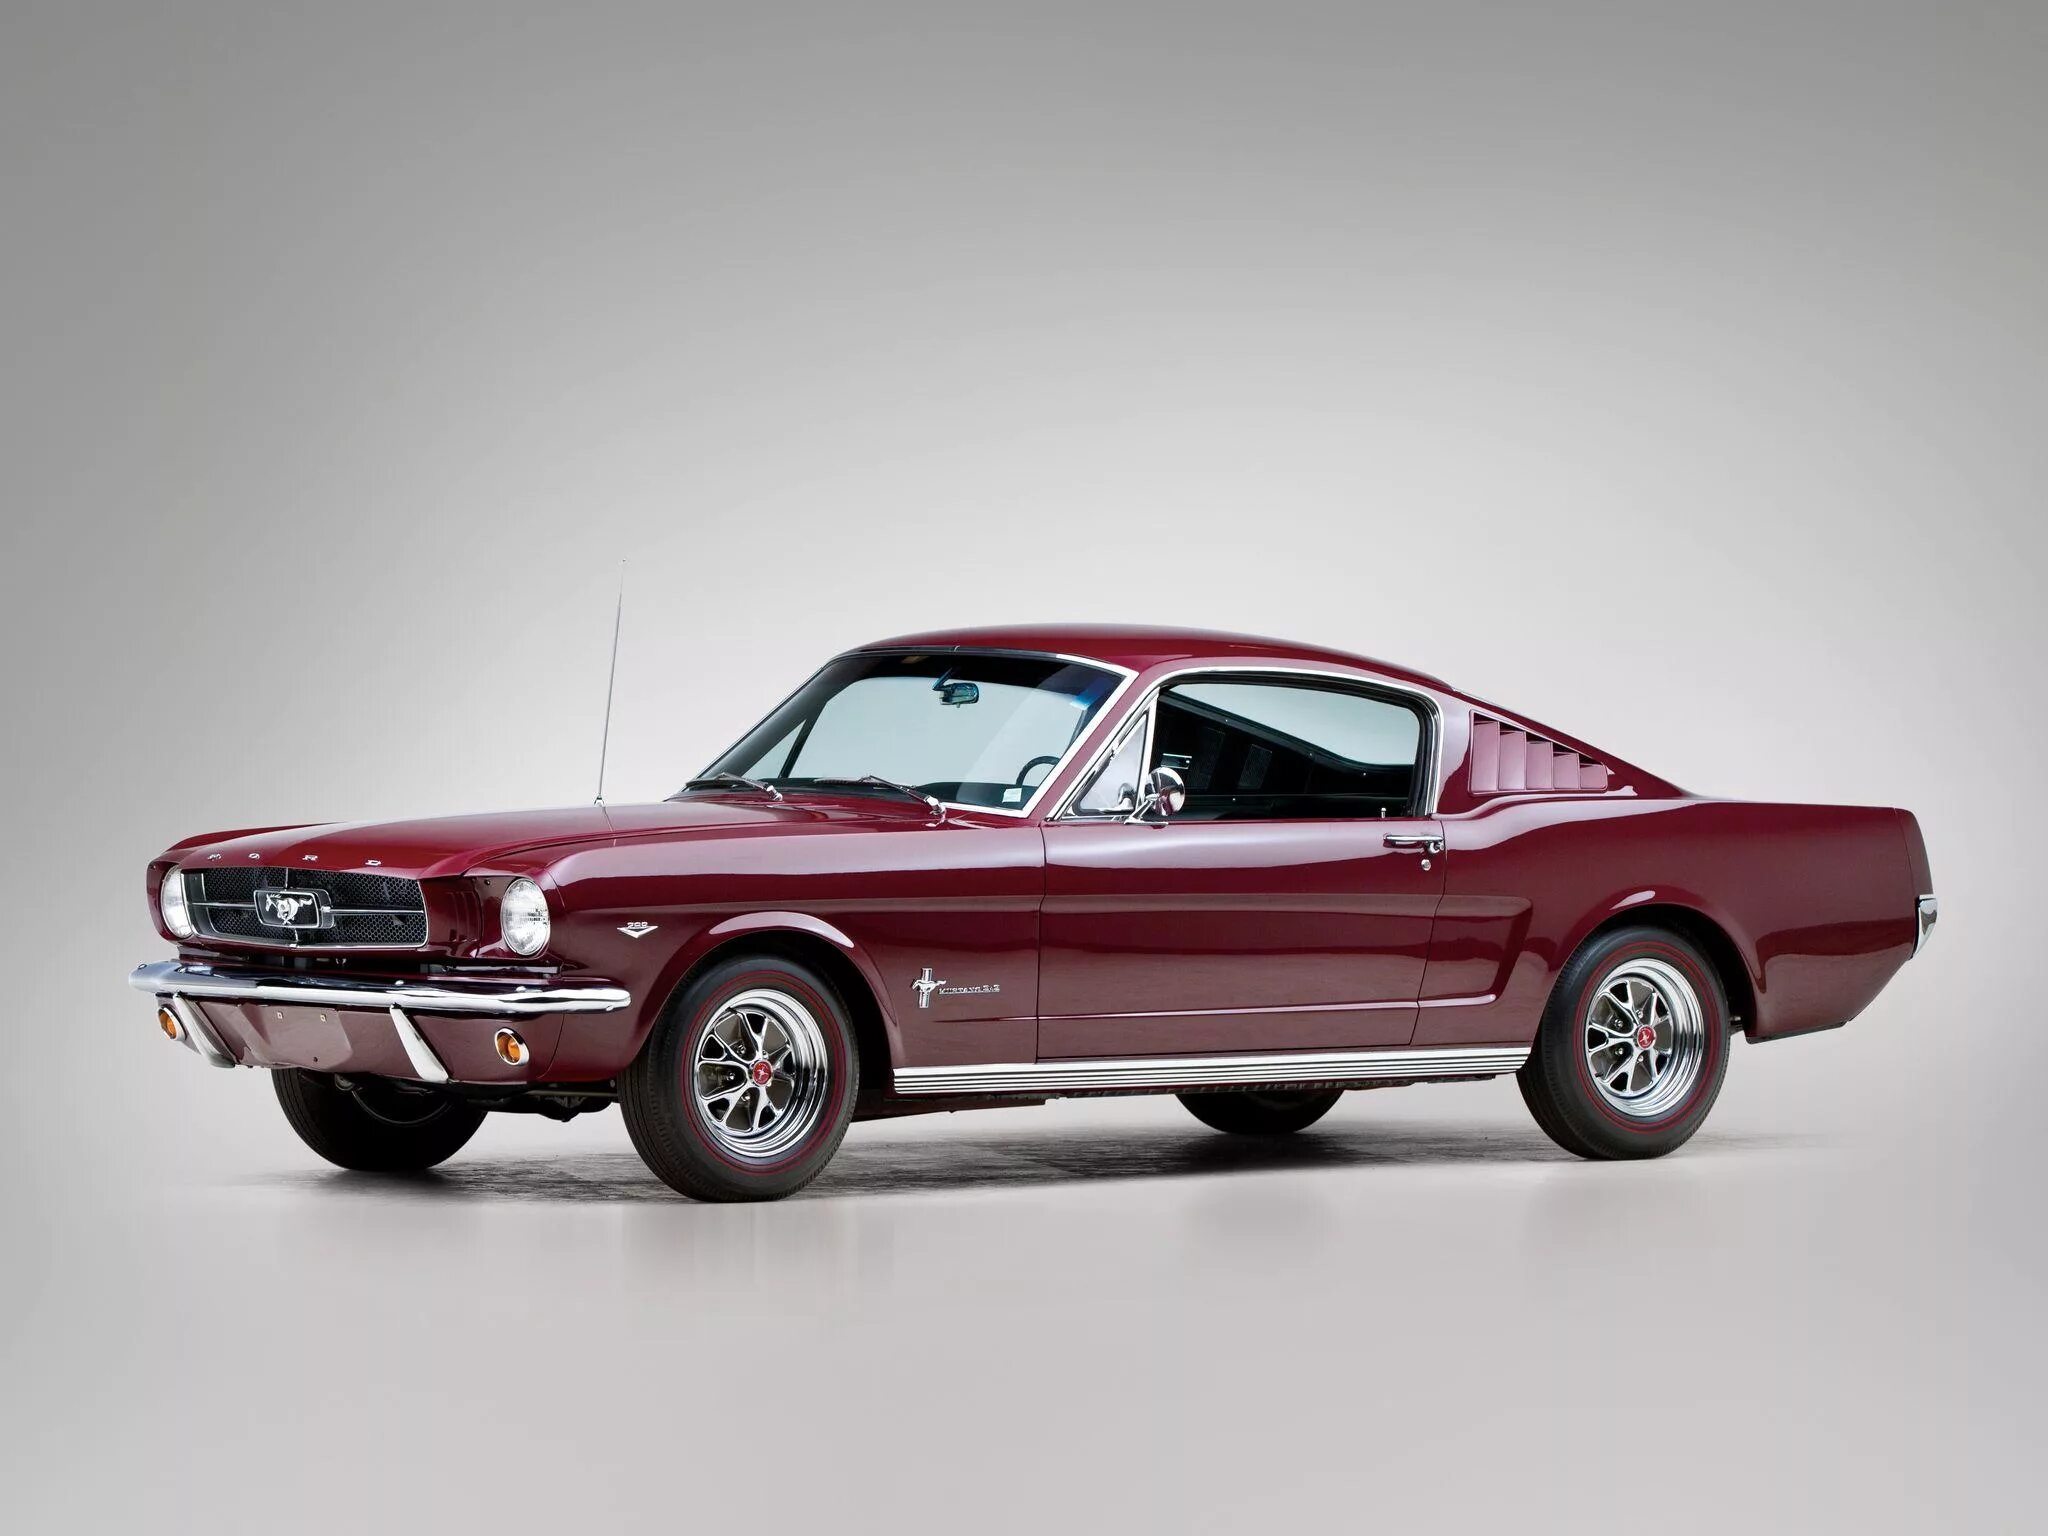 Ford Mustang Fastback 1965. Форд Мустанг 1964 фастбек. Ford Mustang 1 поколения. Форд Мустанг 1 поколения 1965. Первое поколение автомобилей